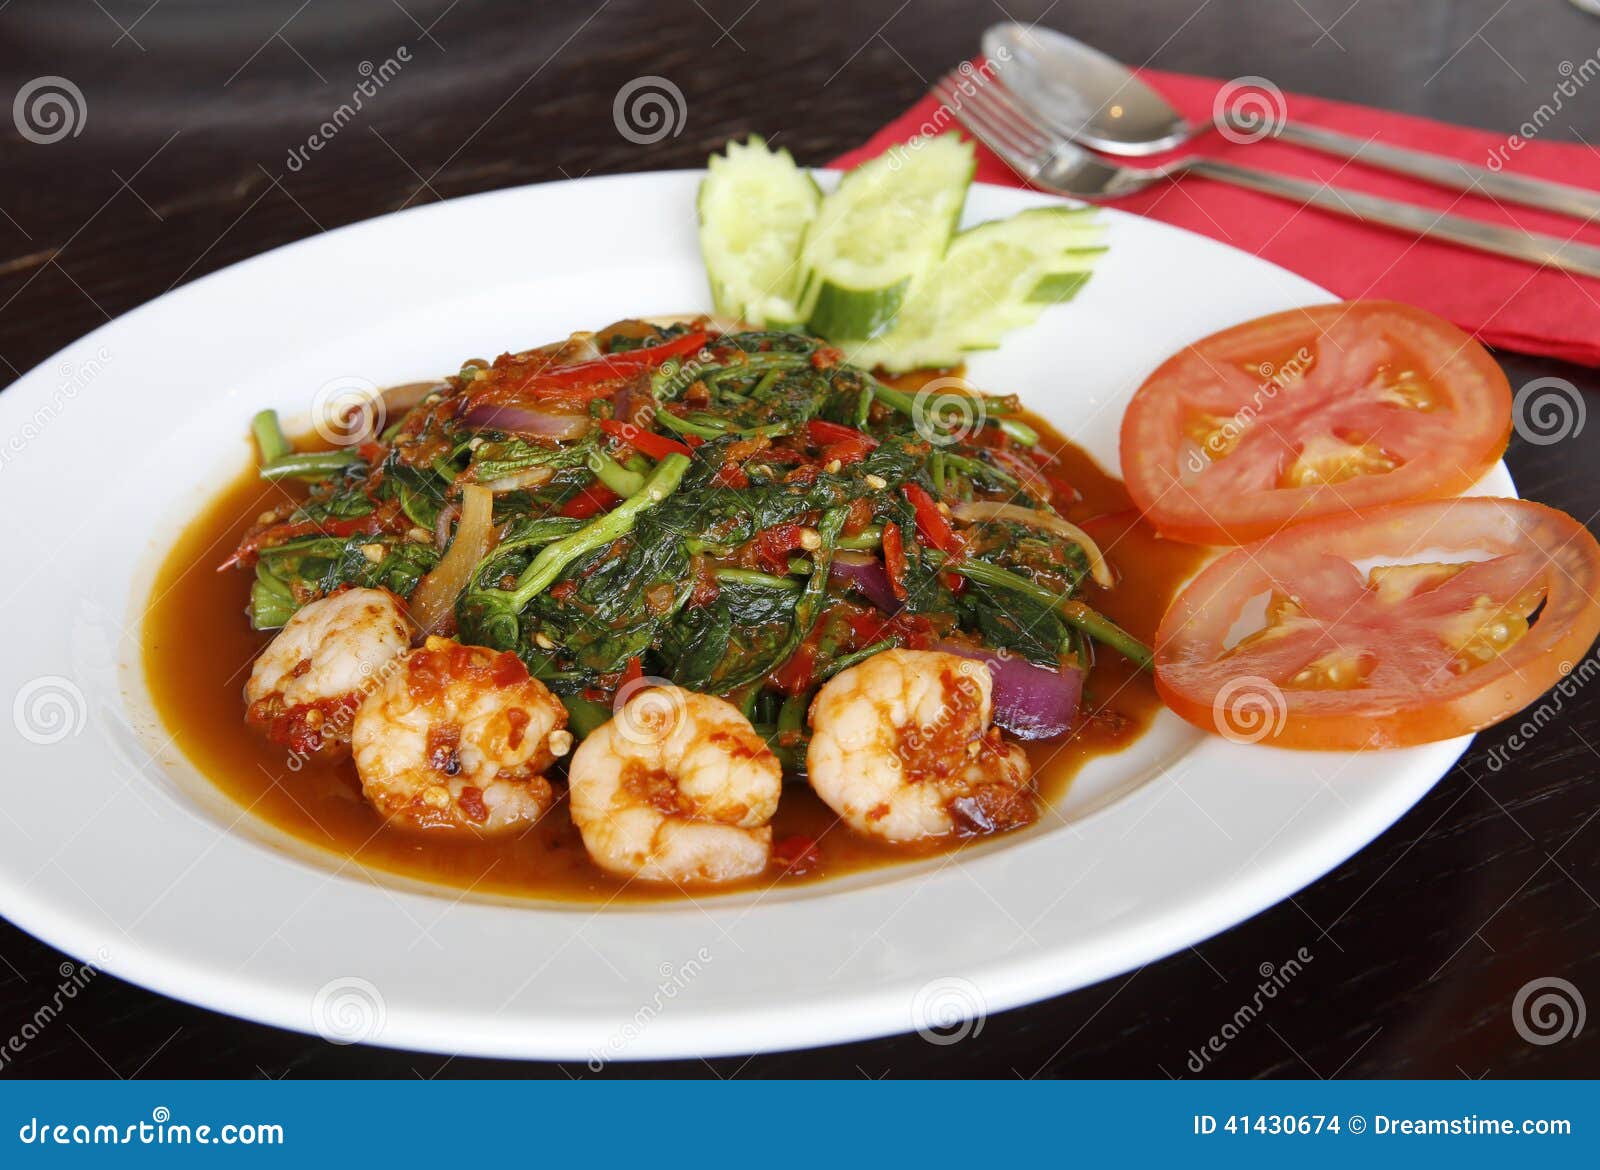 malaysian stir-fried kangkung with belachan seasoning, penang style!